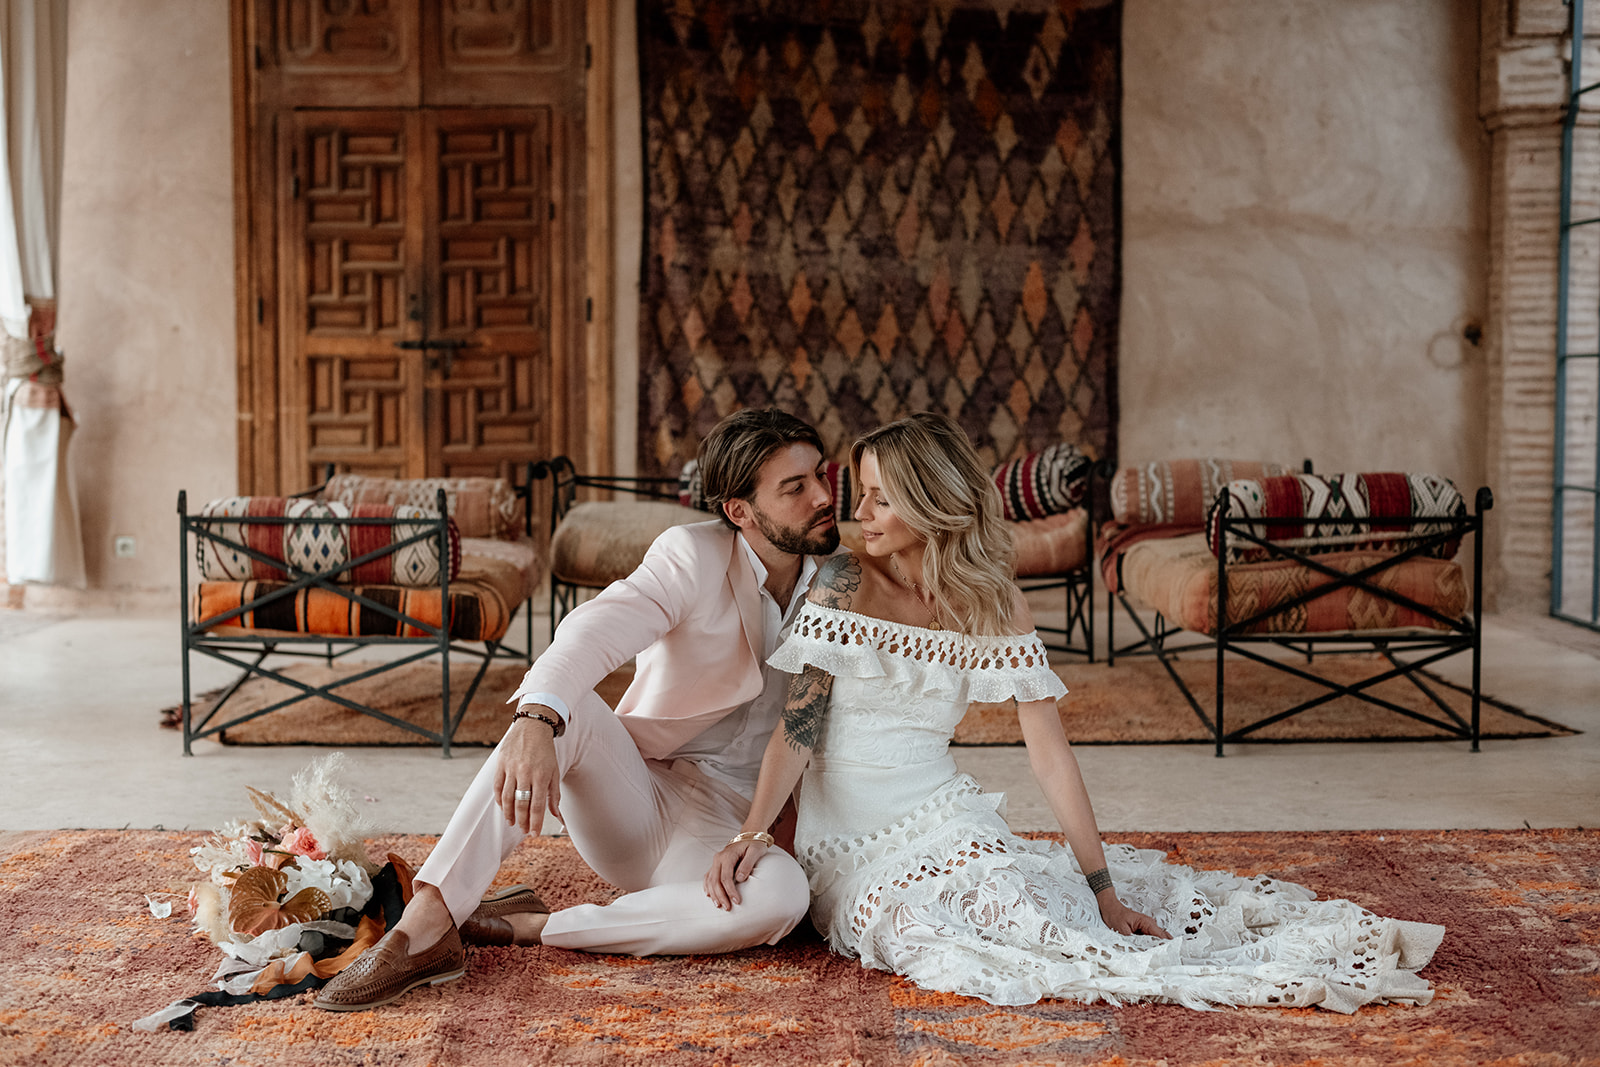 Destination wedding inspo in Marrakech, Morocco 